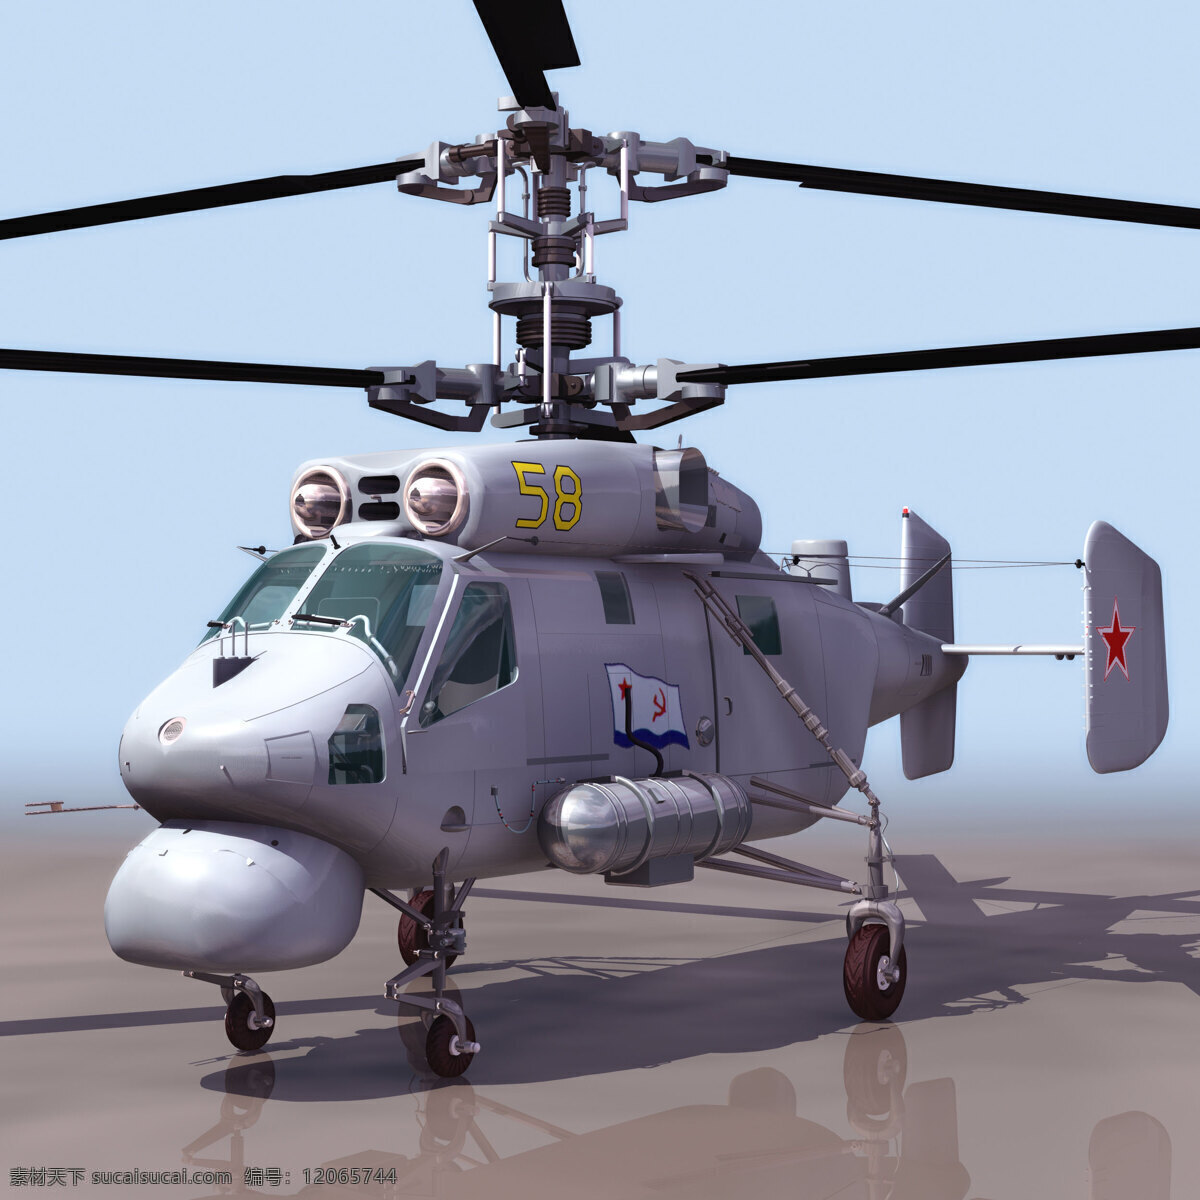 大型 预警机 直升机 雷达 双层螺旋桨 尾翼 3d模型素材 其他3d模型